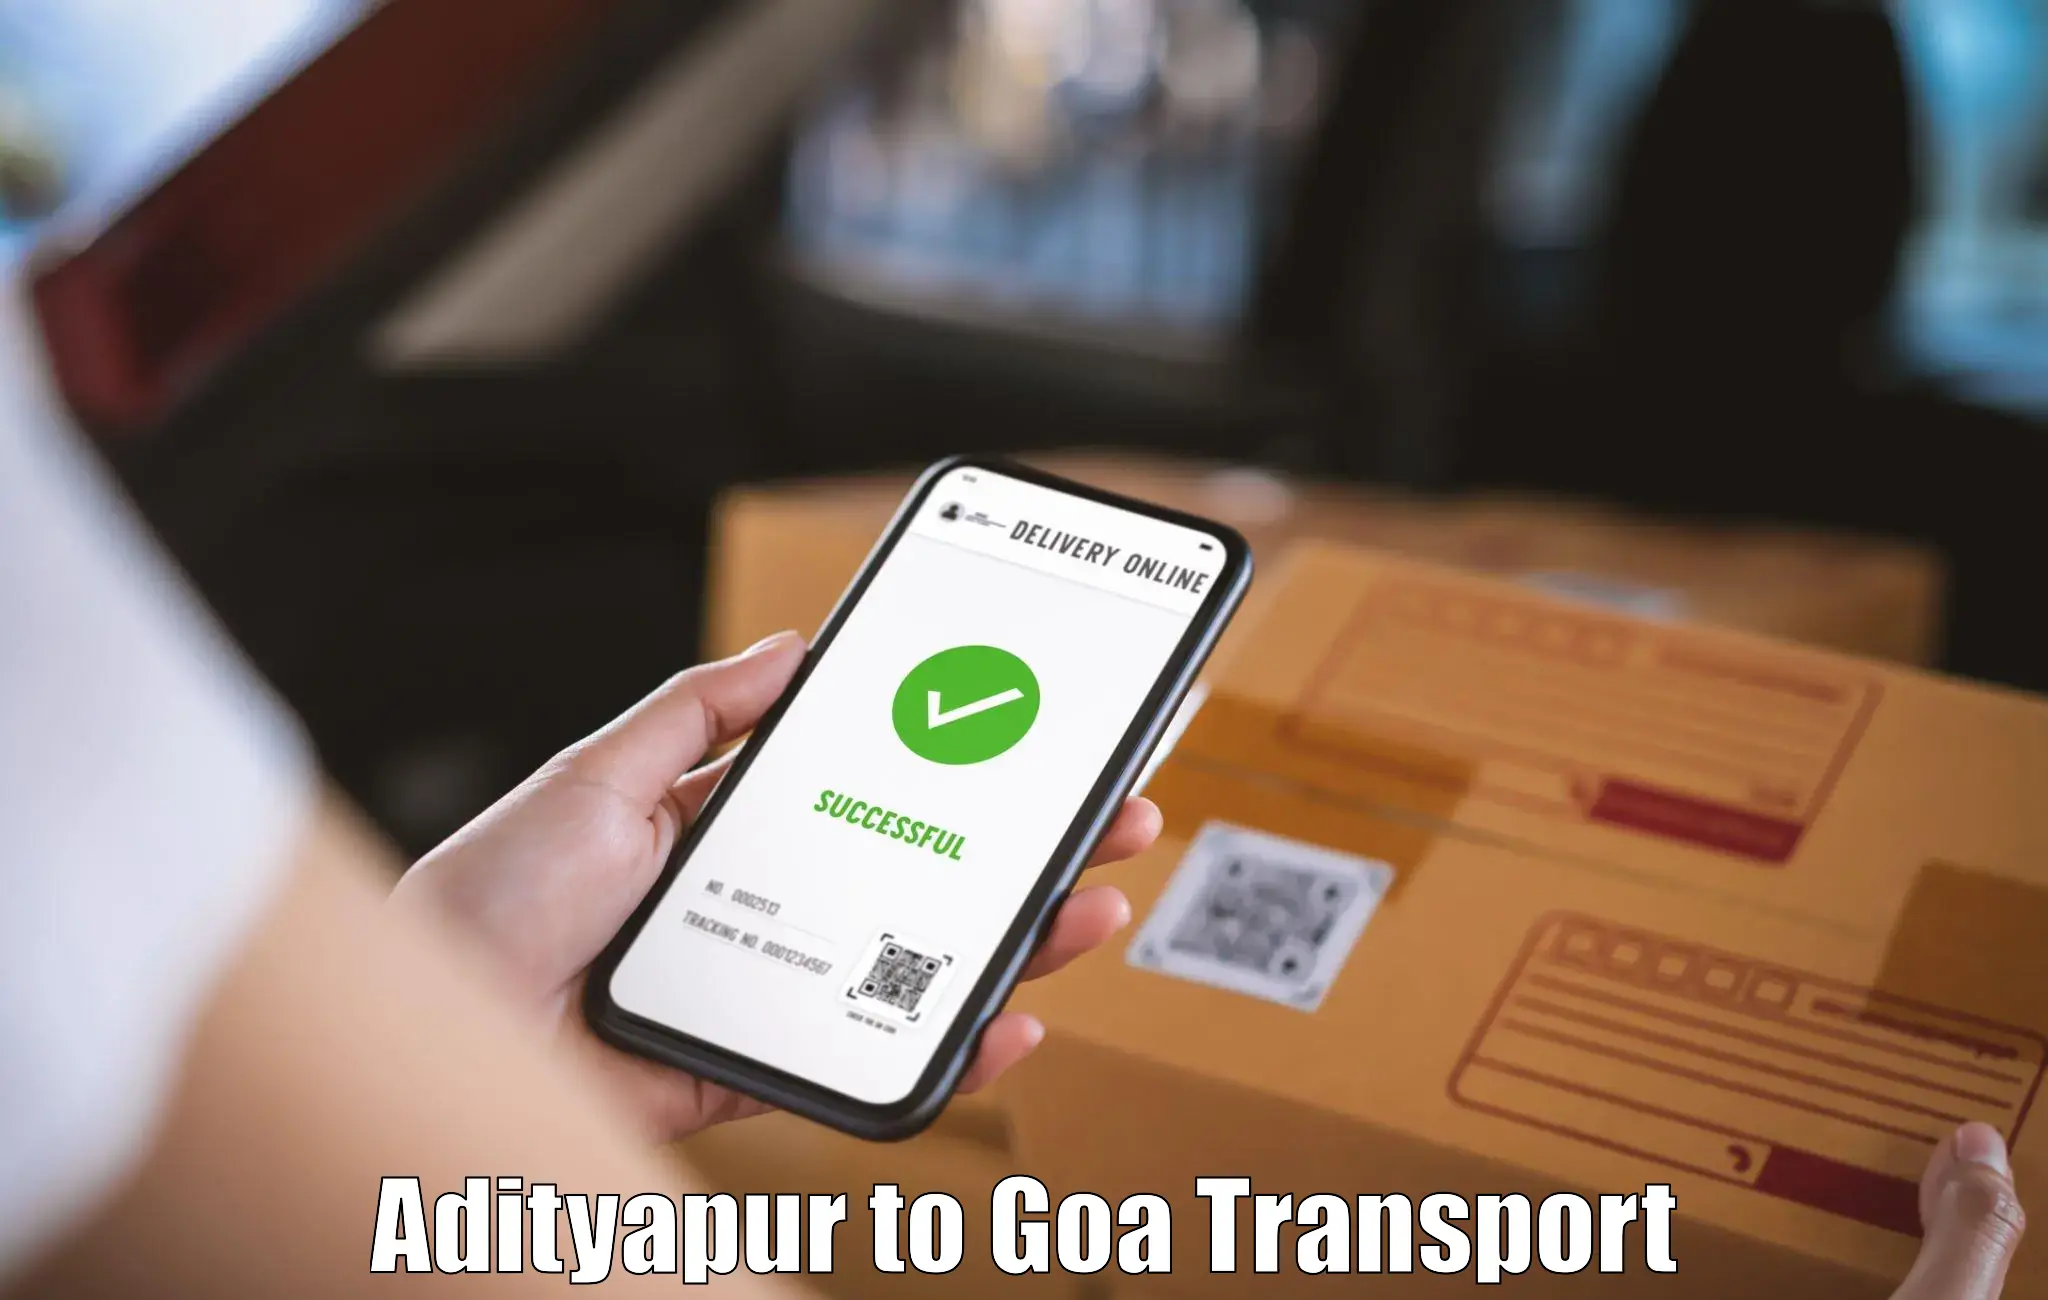 Two wheeler transport services Adityapur to NIT Goa